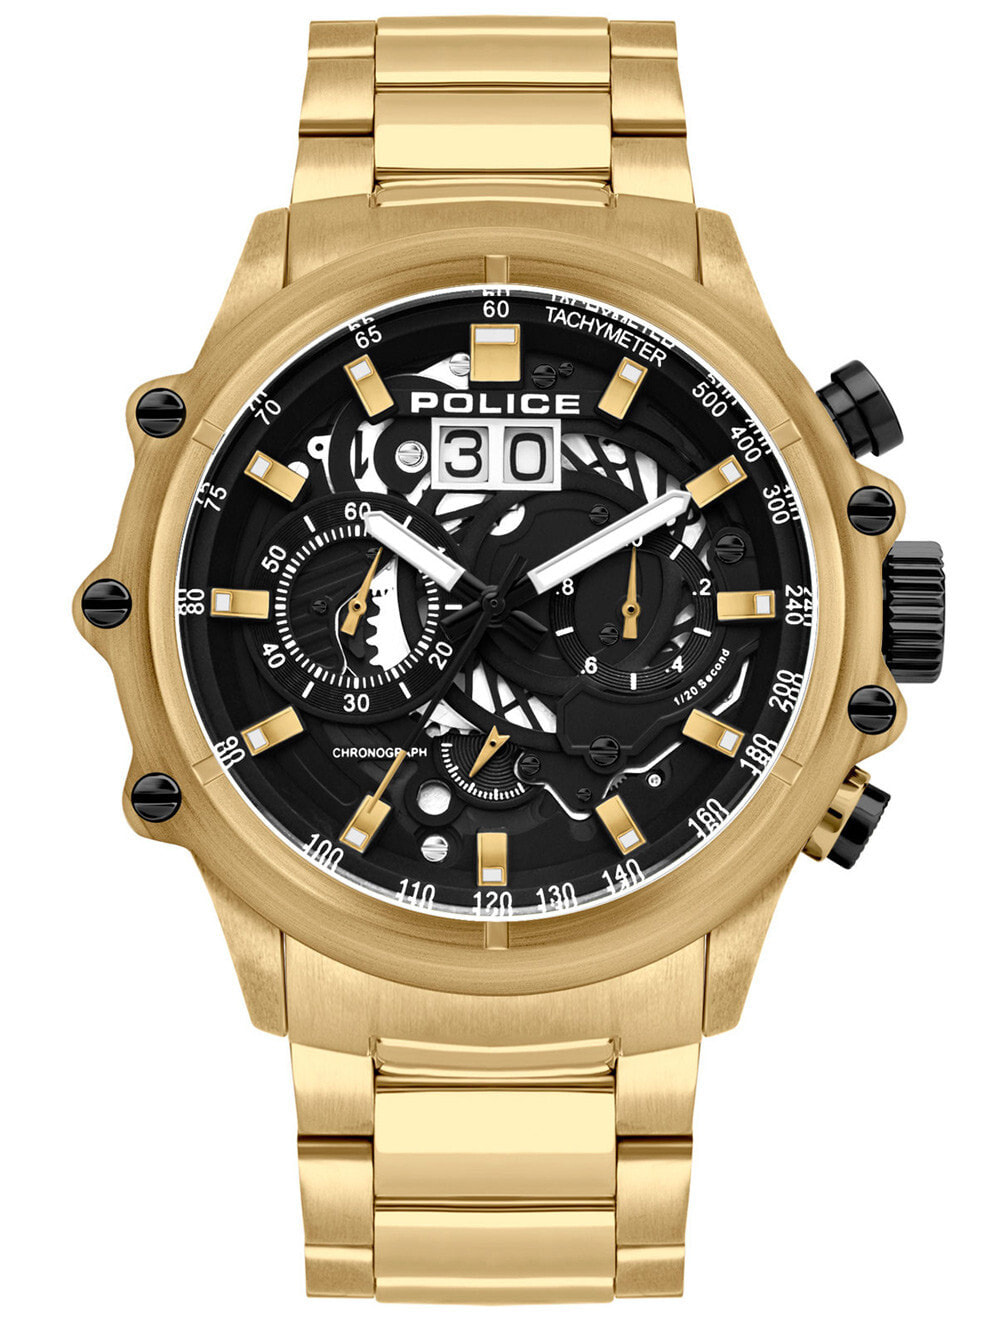 Мужские наручные часы с золотистым браслетом Police PL16018JSG.02M Luang chrono mens 48mm 10ATM